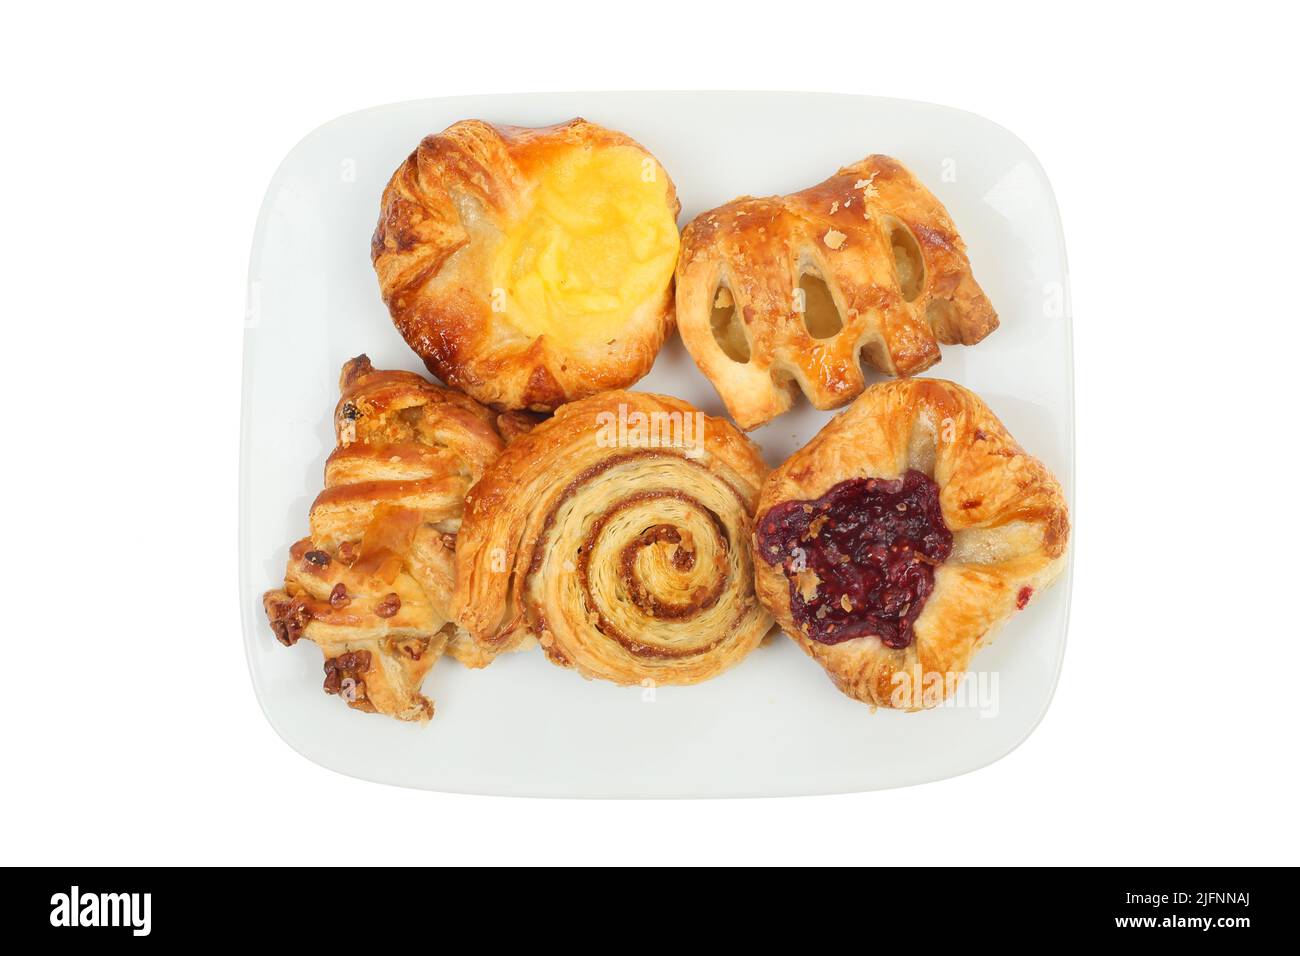 Selección de mini pasteles daneses en un plato, vista superior, aislados contra el blanco Foto de stock